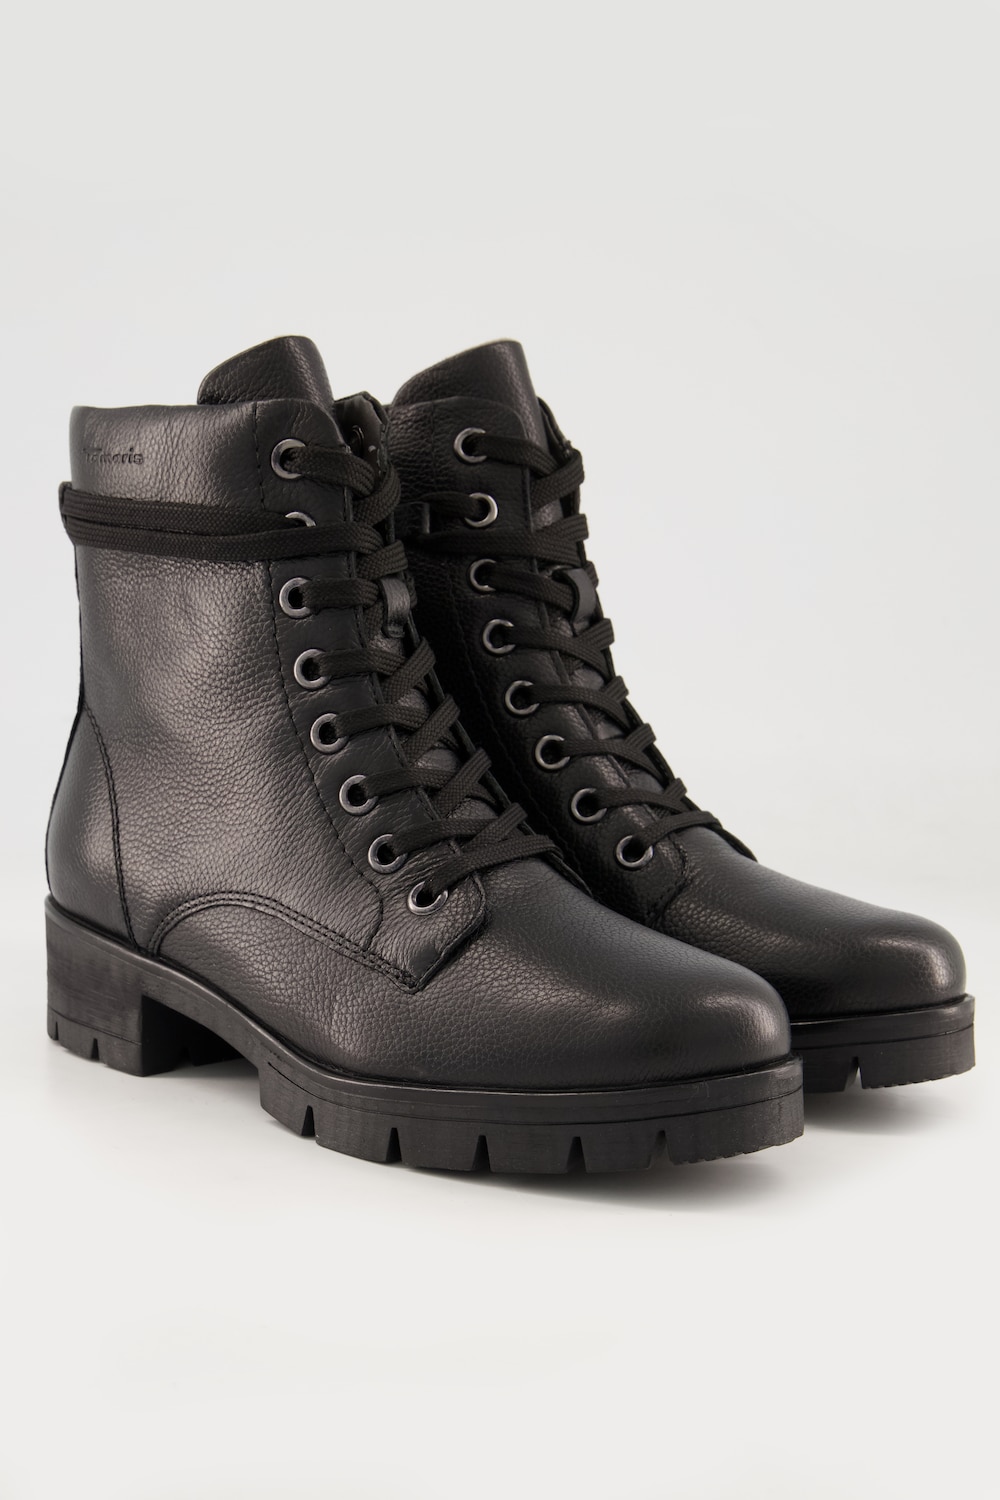 Tamaris Comfort Leder-Boots, Damen, schwarz, Größe: 37, Polyester/Leder, Ulla Popken von Ulla Popken